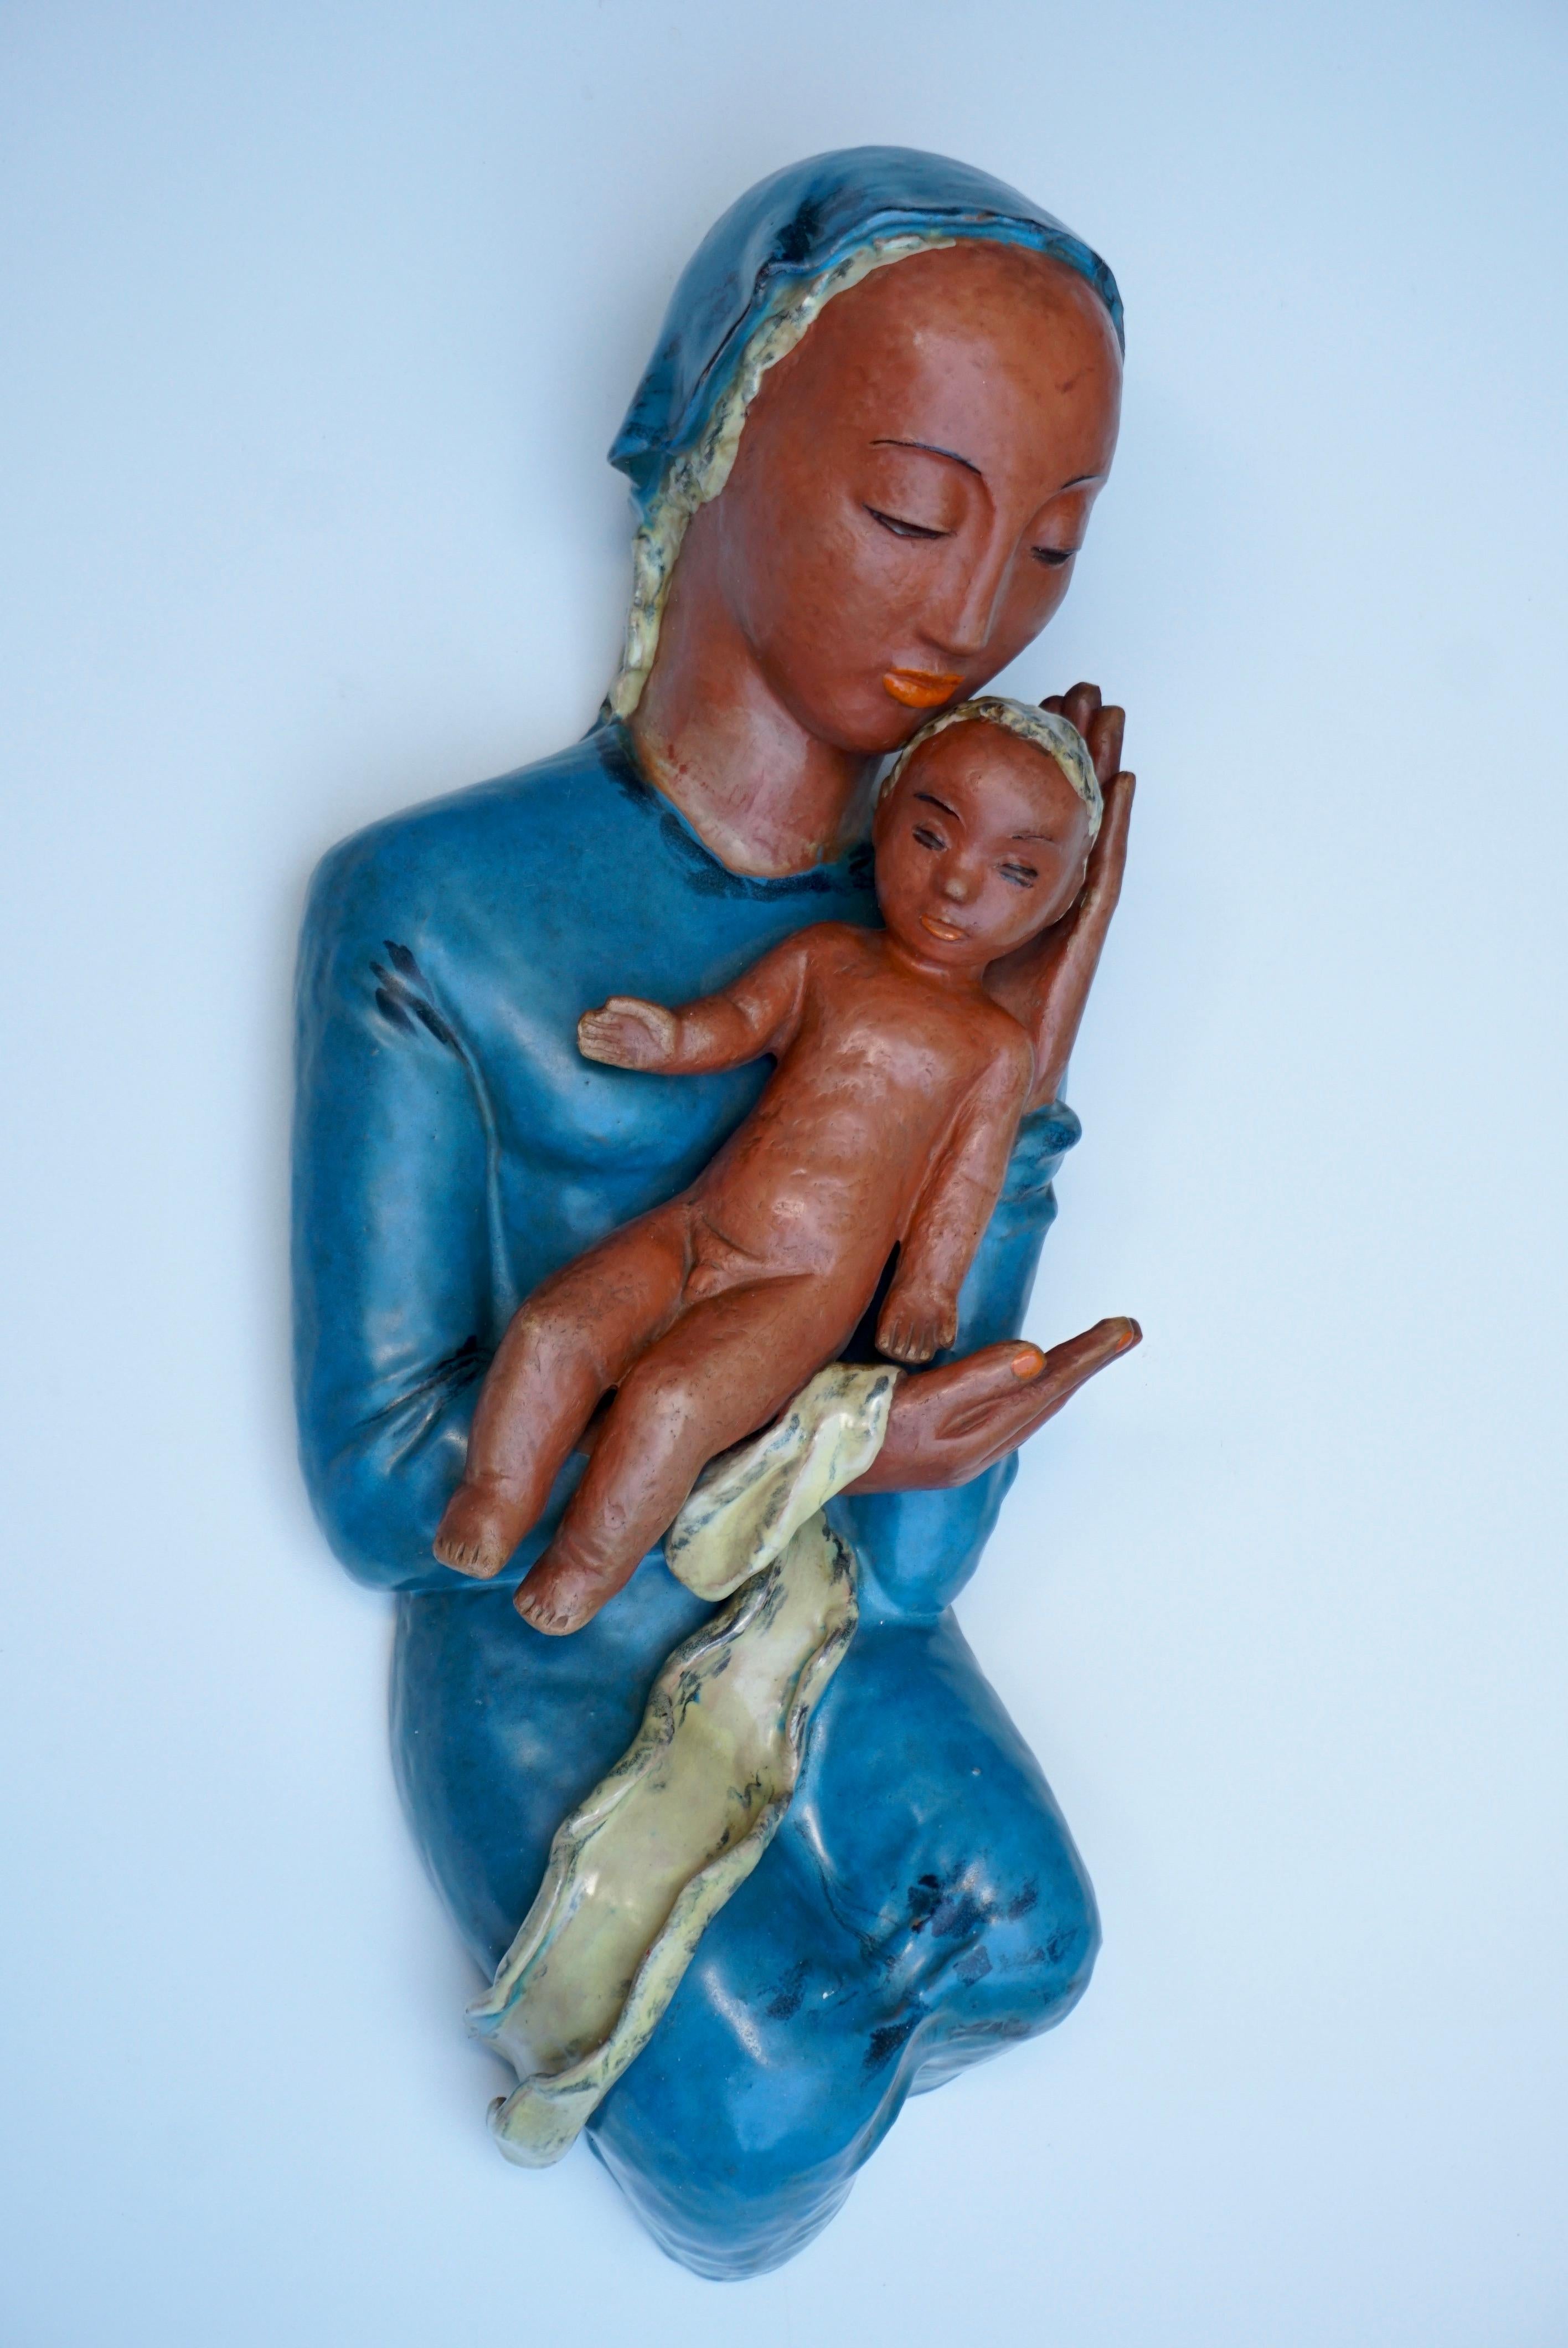 Figürliche Wandreliefskulptur aus Terrakotta, die die Jungfrau Maria darstellt, während sie ihr lebendiges Kind hält.

Höhe 22,4